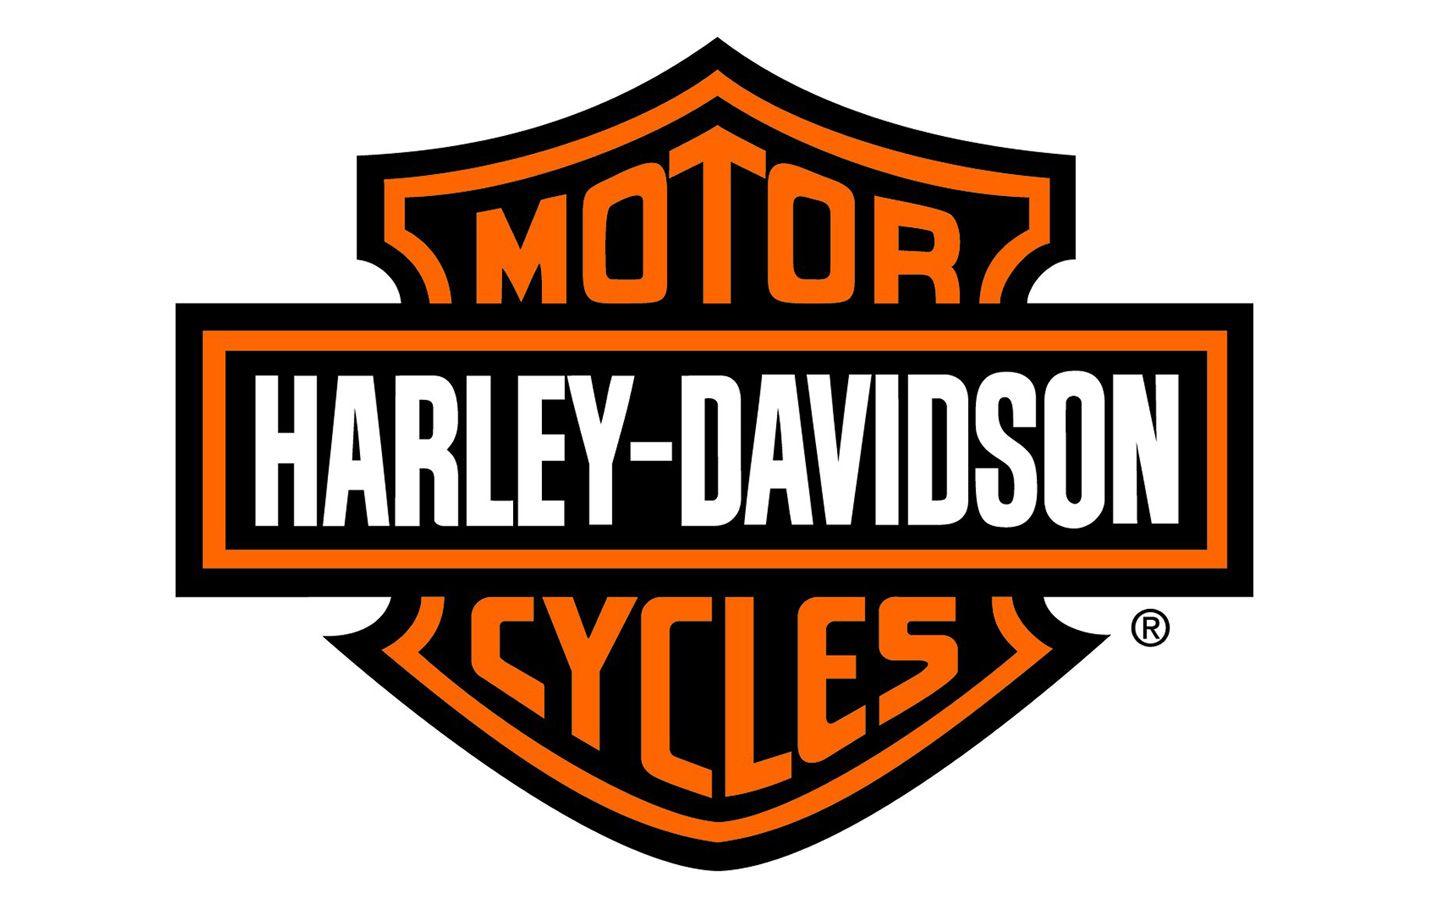 ผลการค้นหารูปภาพสำหรับ harley davidson logo